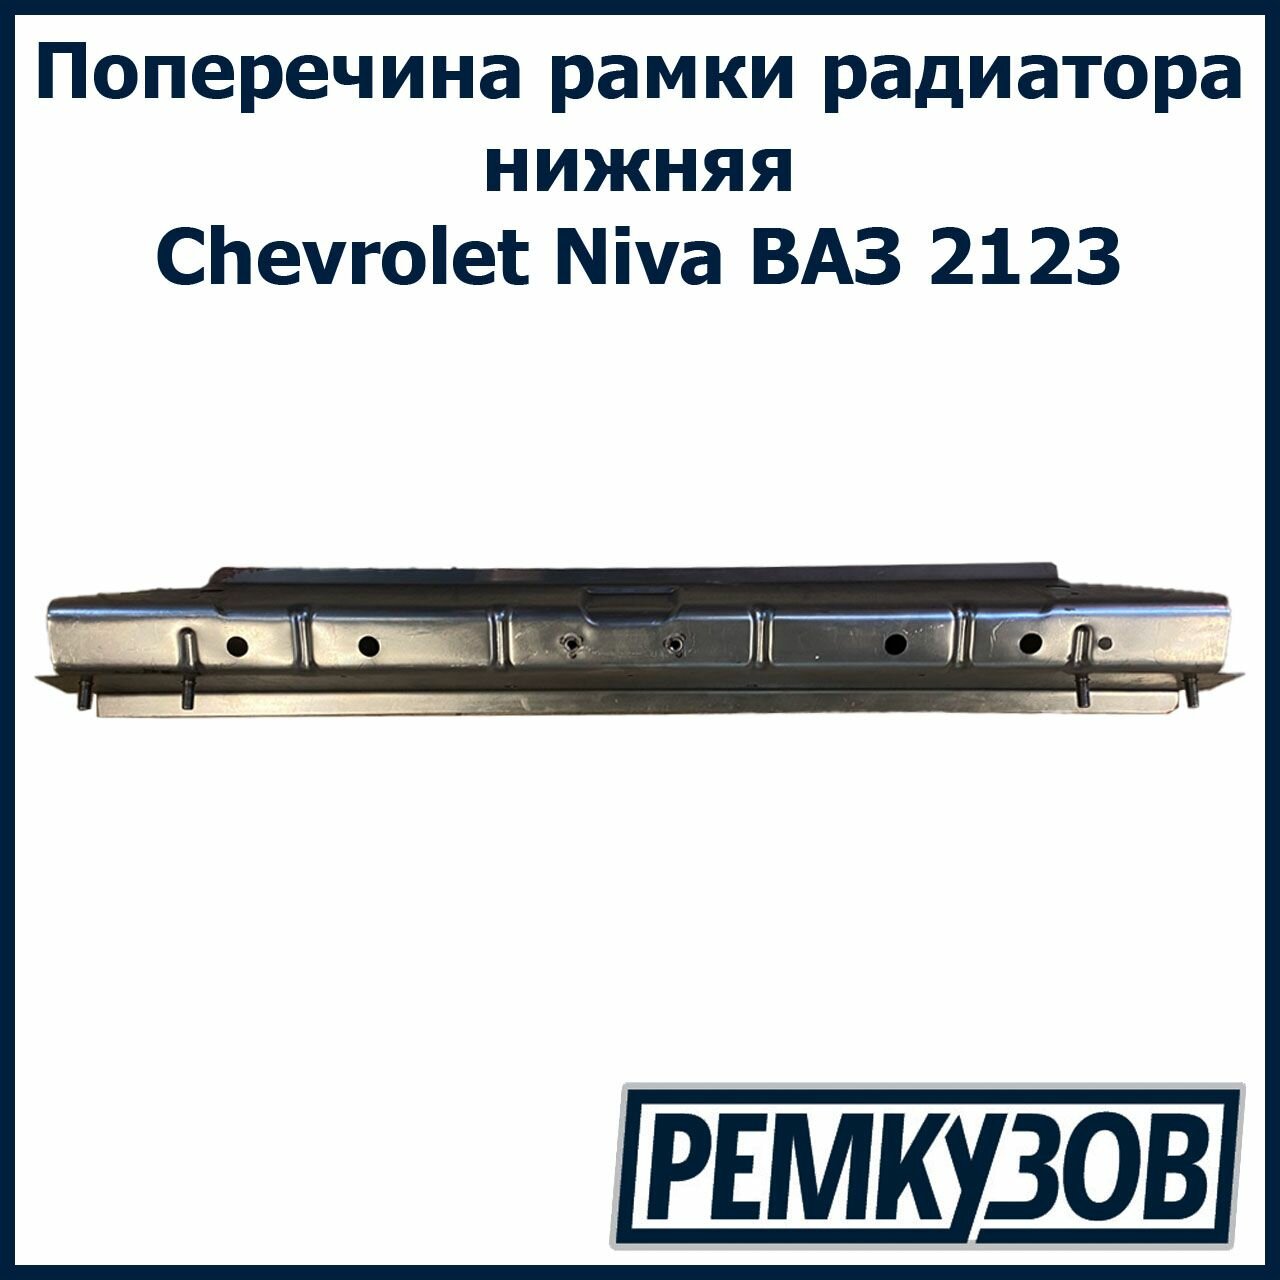 Поперечина рамки радиатора нижняя Нива Шевроле ВАЗ 2123